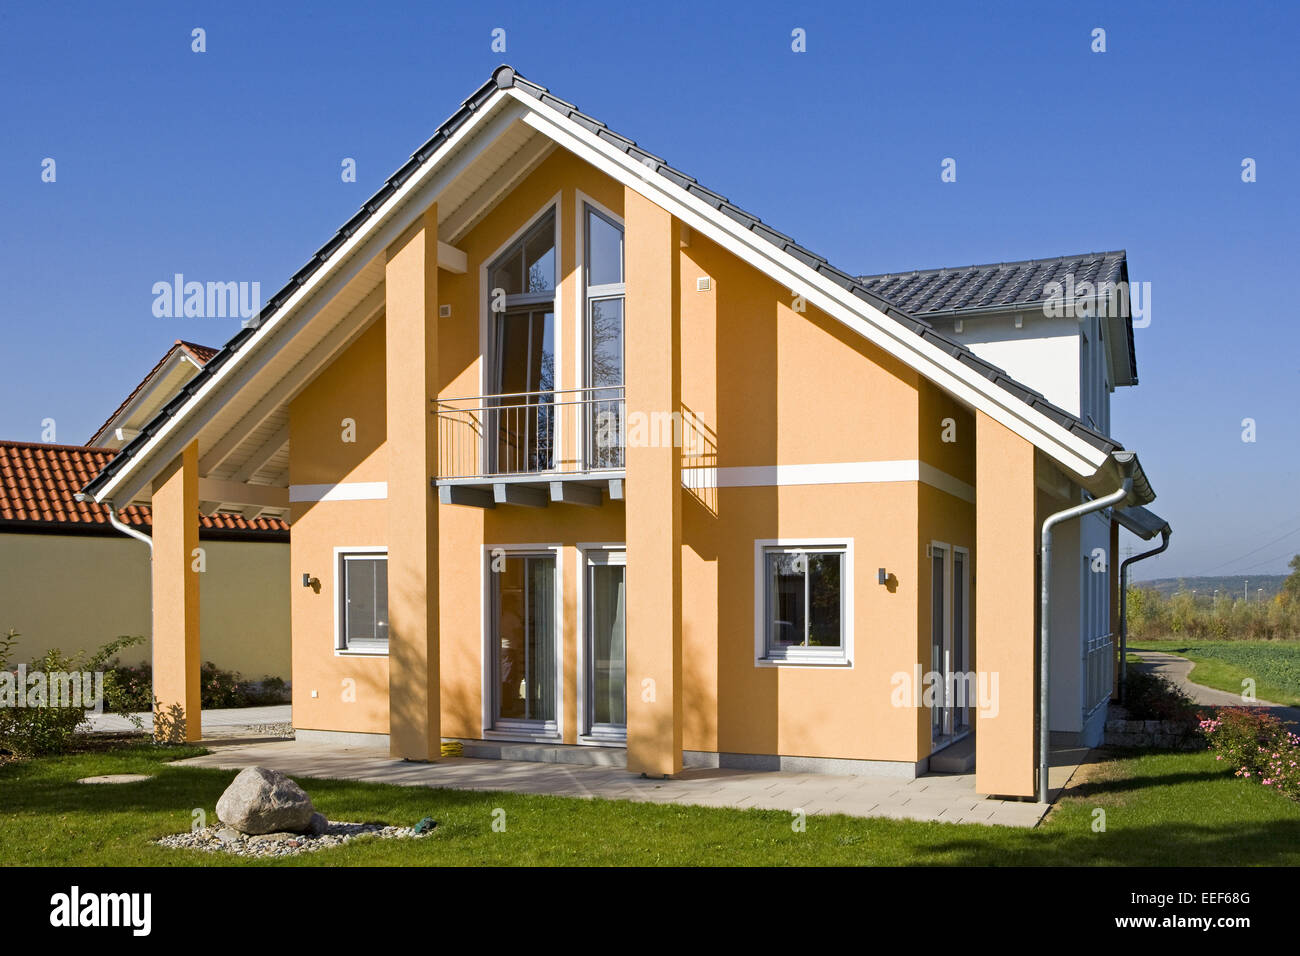 Einfamilienhaus, Architektur, Haus, Wohnhaus, Gebaeude, Eigenheim, Fertighaus, Wohnen, Garten, Infrastruktur, Haeuser, architect Stock Photo